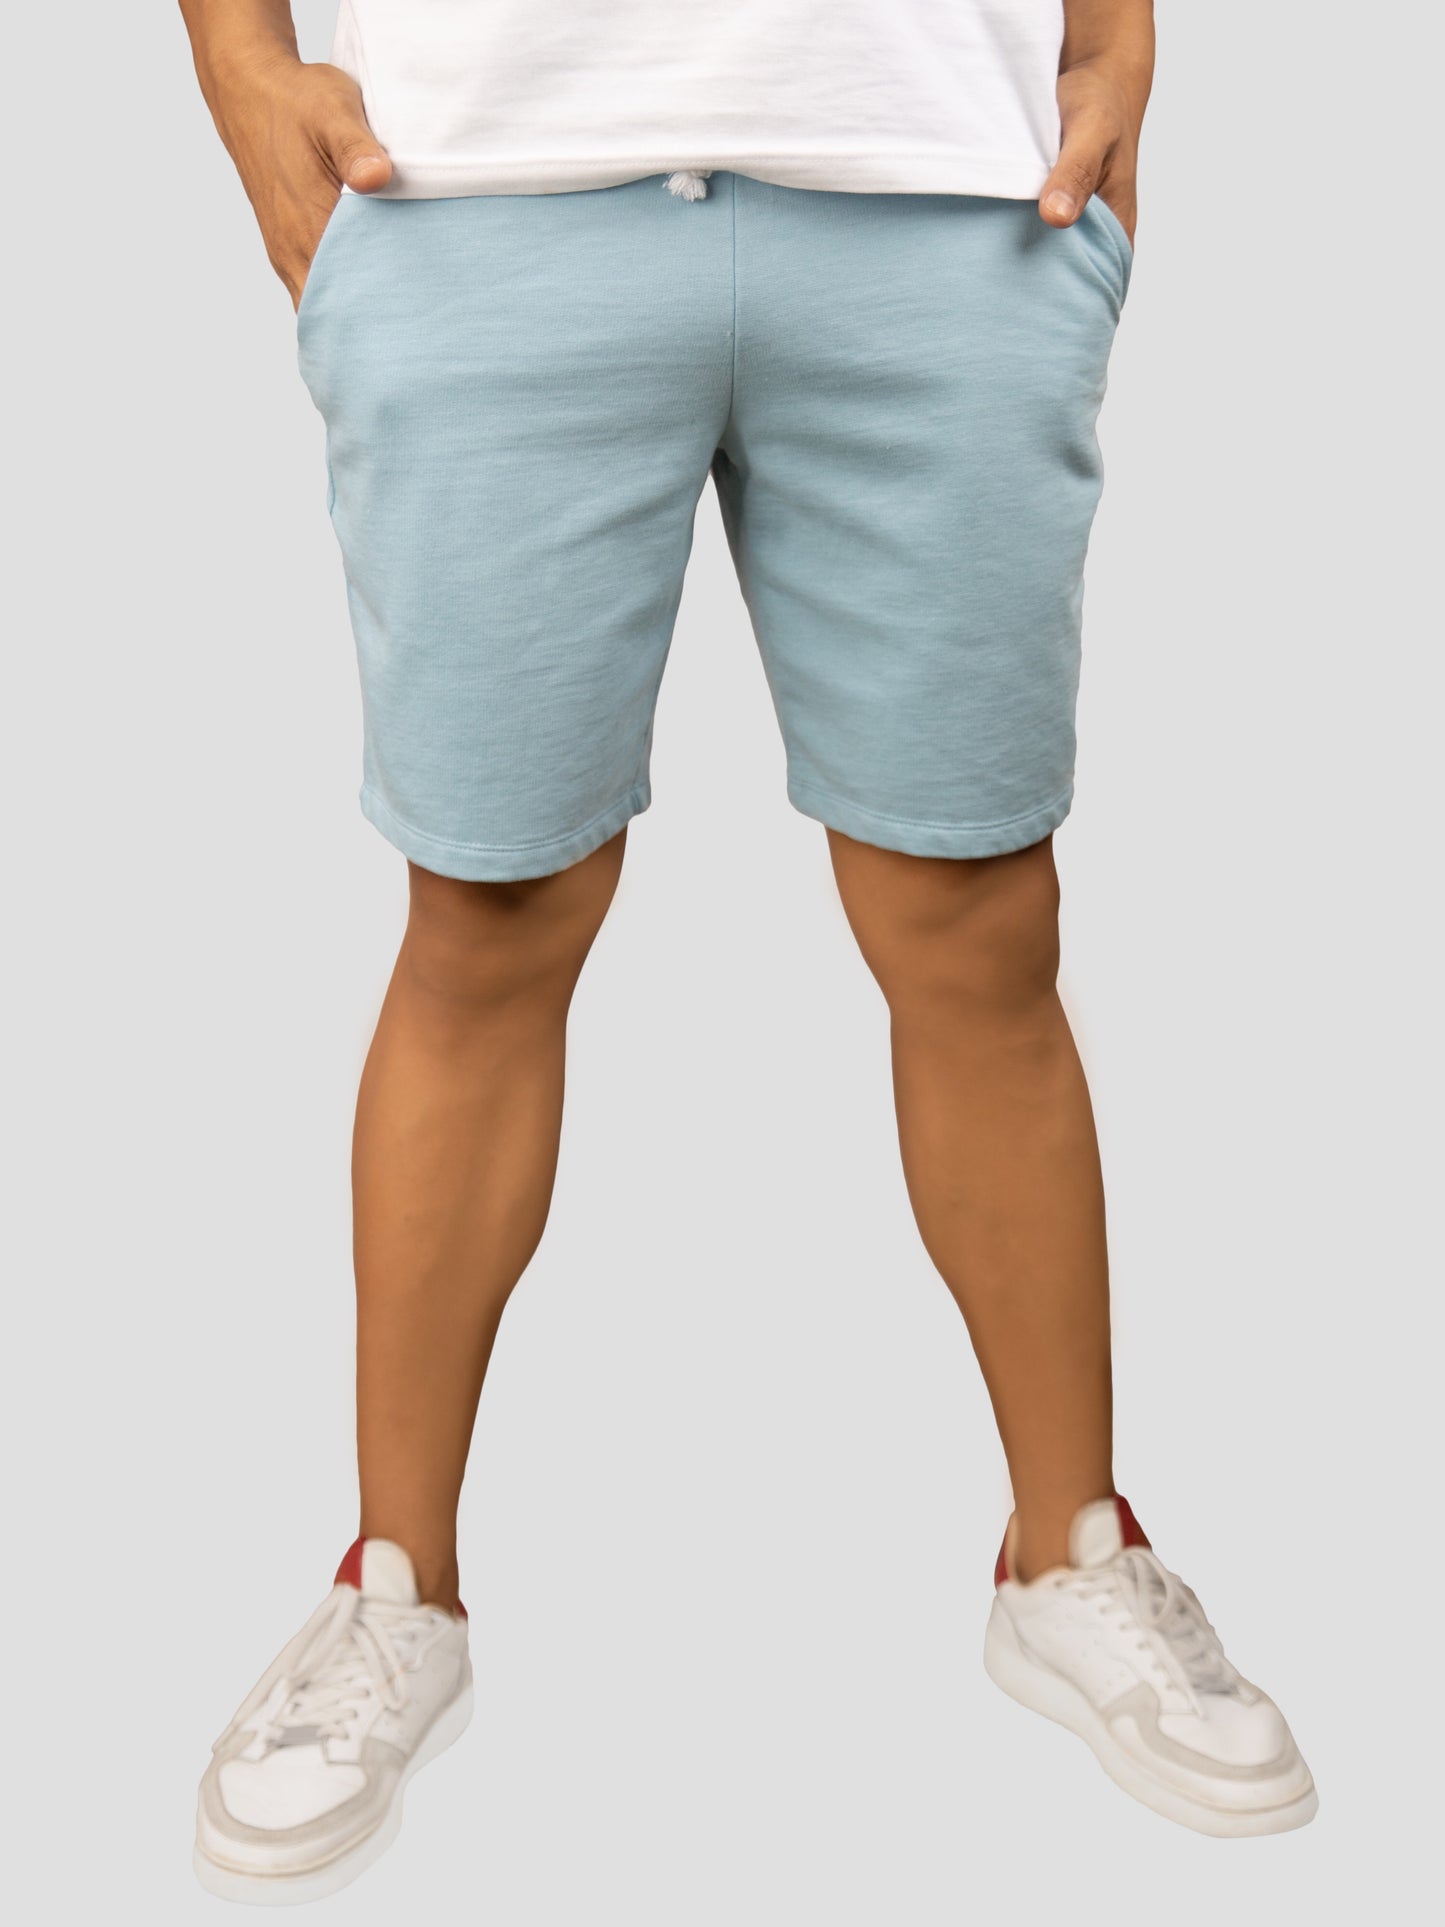 Blue casual cotton fleece shorts for men